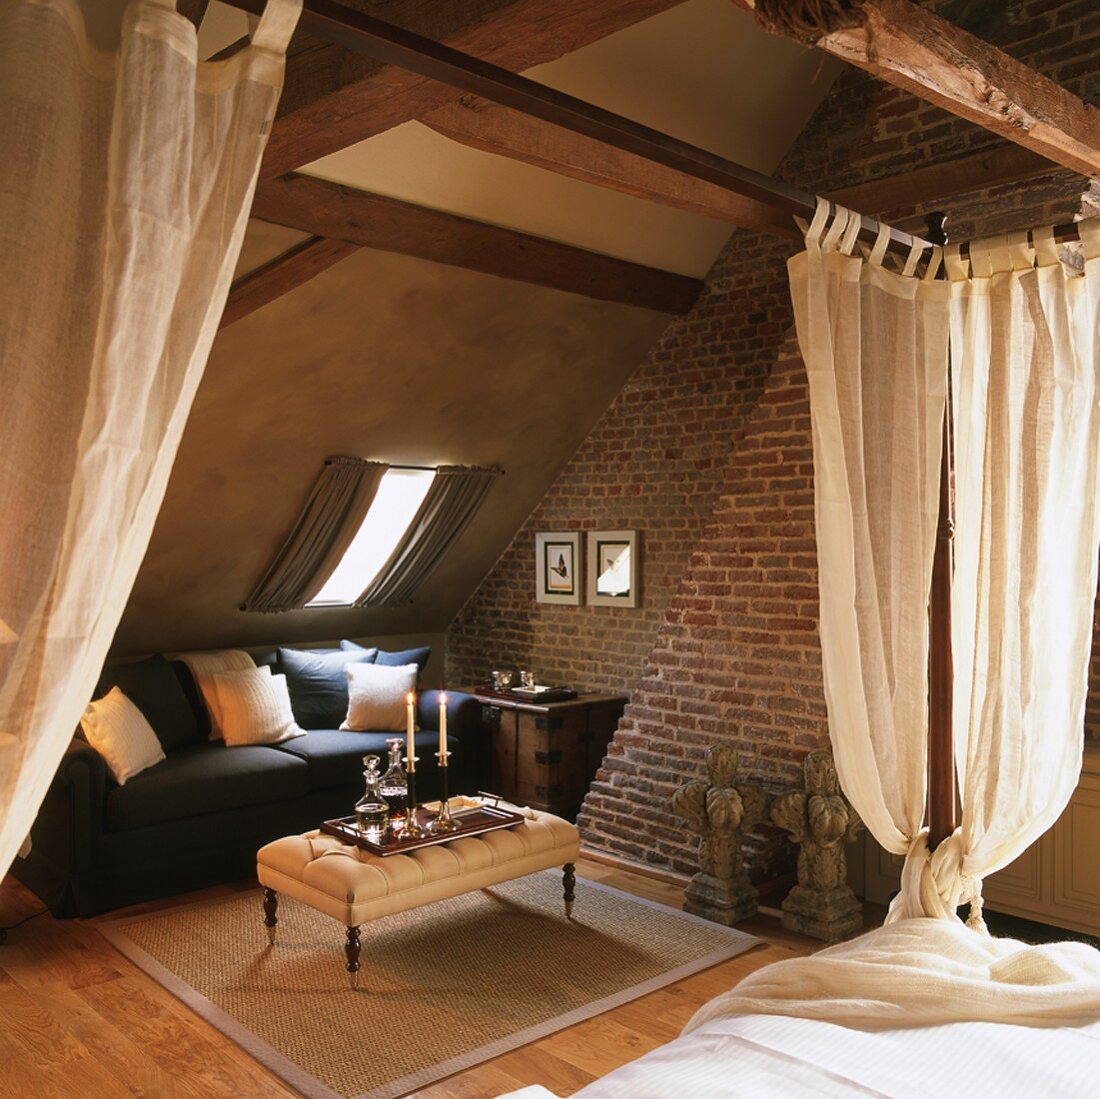 Gemütlicher Wohn-Schlafraum im traditionellen Stil mit Ziegelwand und offener Dachkonstruktion